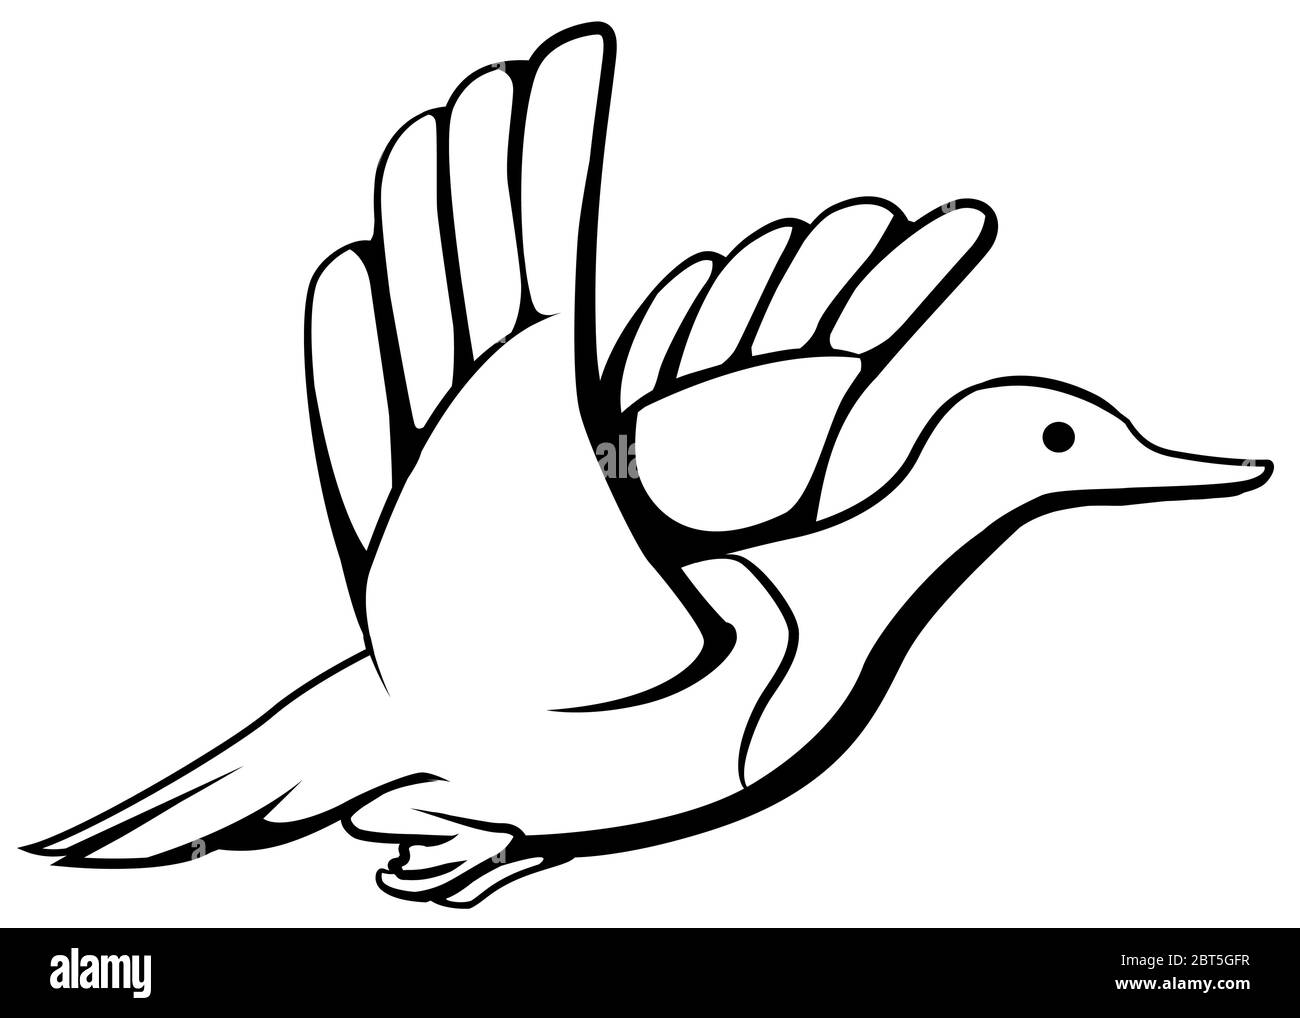 Dessin de ligne de dessin animé volant de canard, vecteur, horizontal, noir et blanc, isolé Illustration de Vecteur